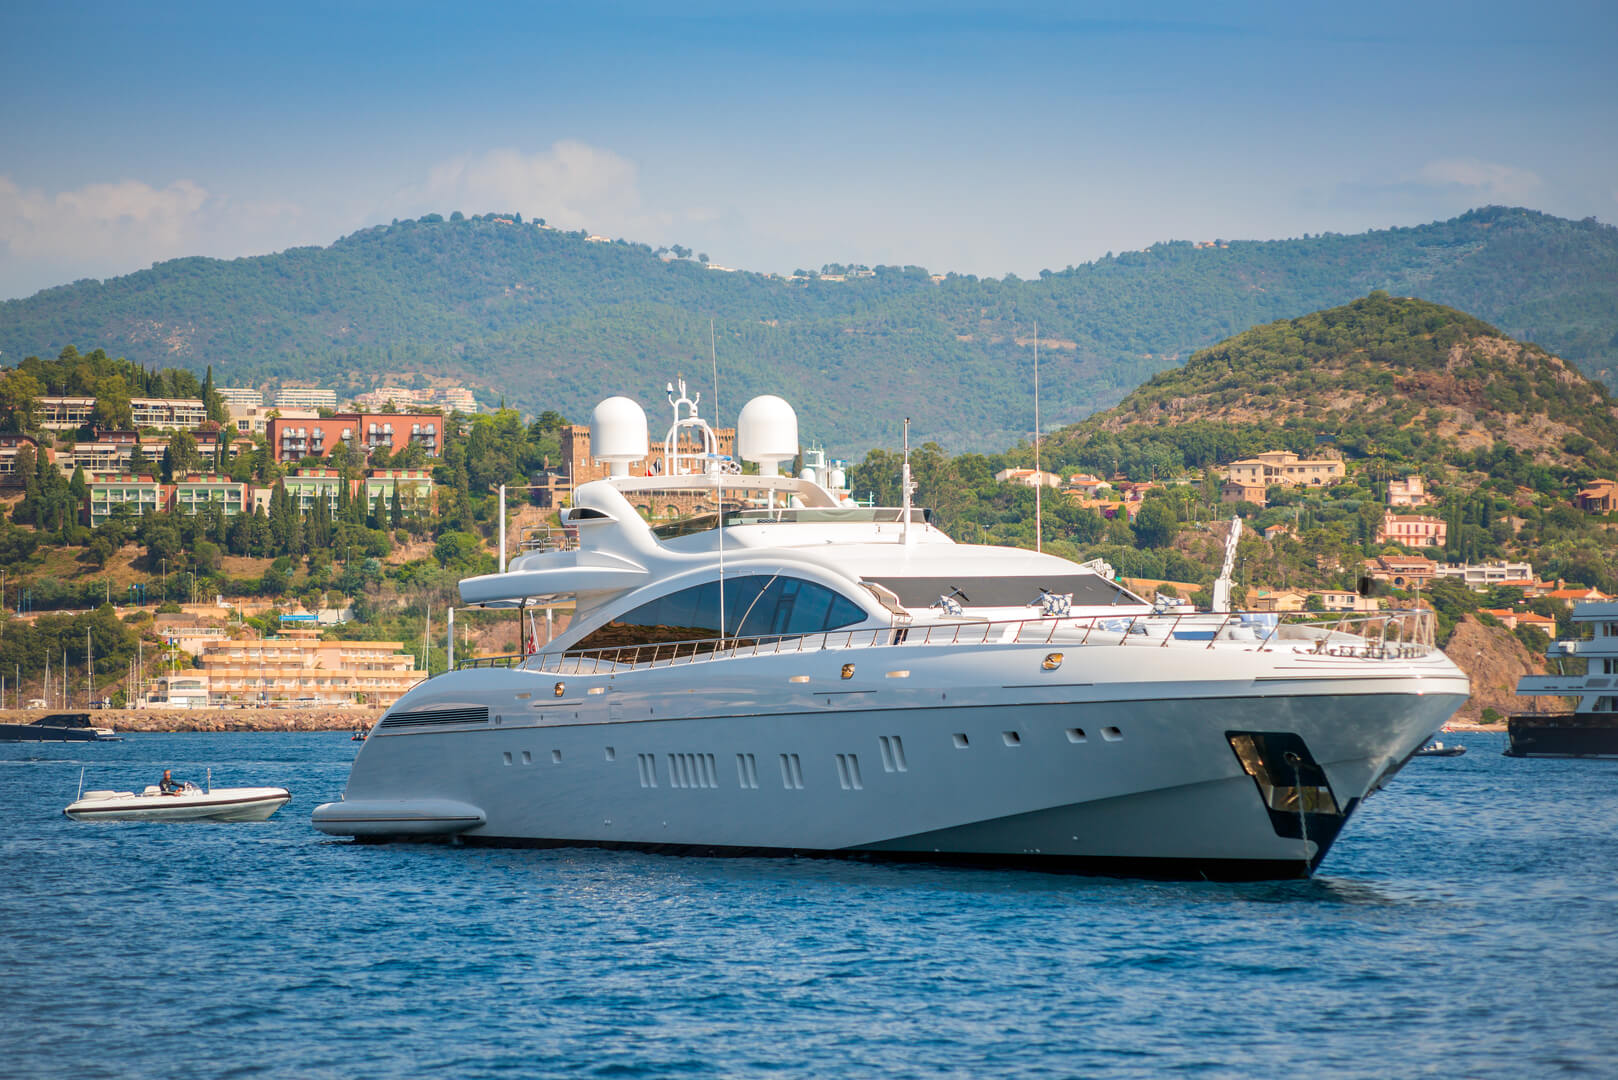 Grand yacht à moteur blanc ancré dans la baie de Cannes, en France, en été, avec des coussins sur le pont supérieur pour le divertissement des invités.